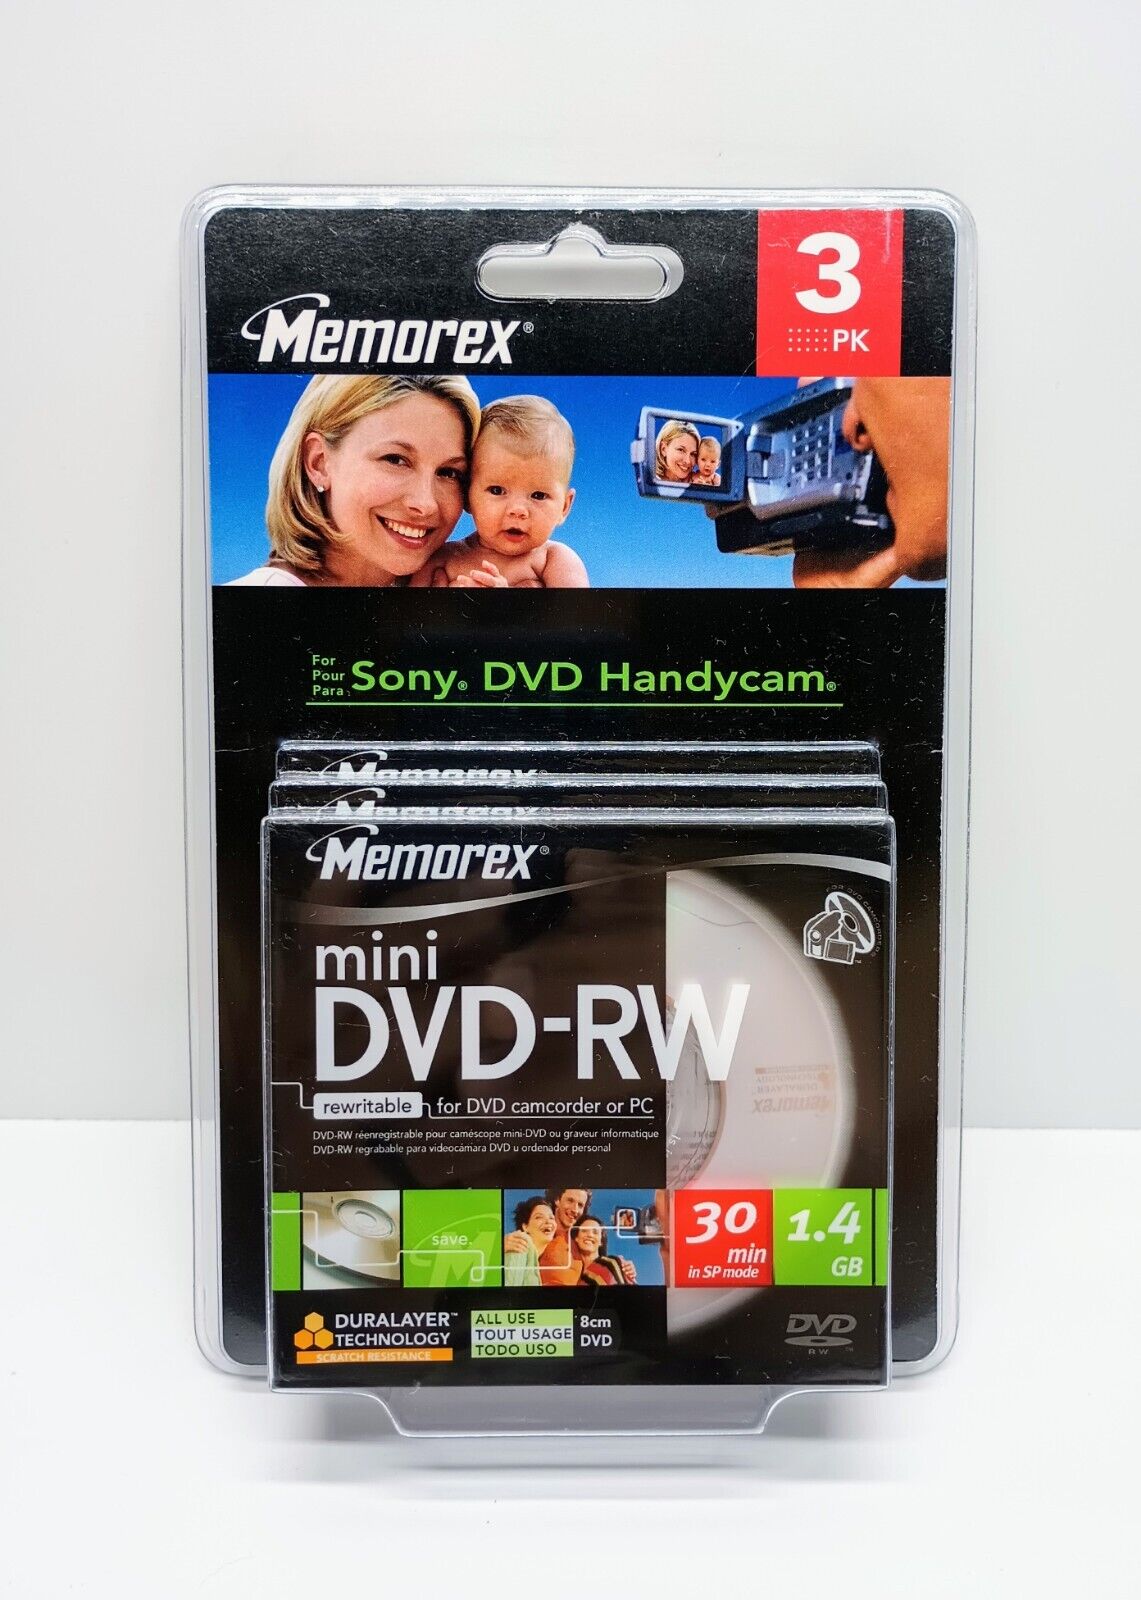 Memorex Mini DVD-RW 3 Pack 1.4GB 30min